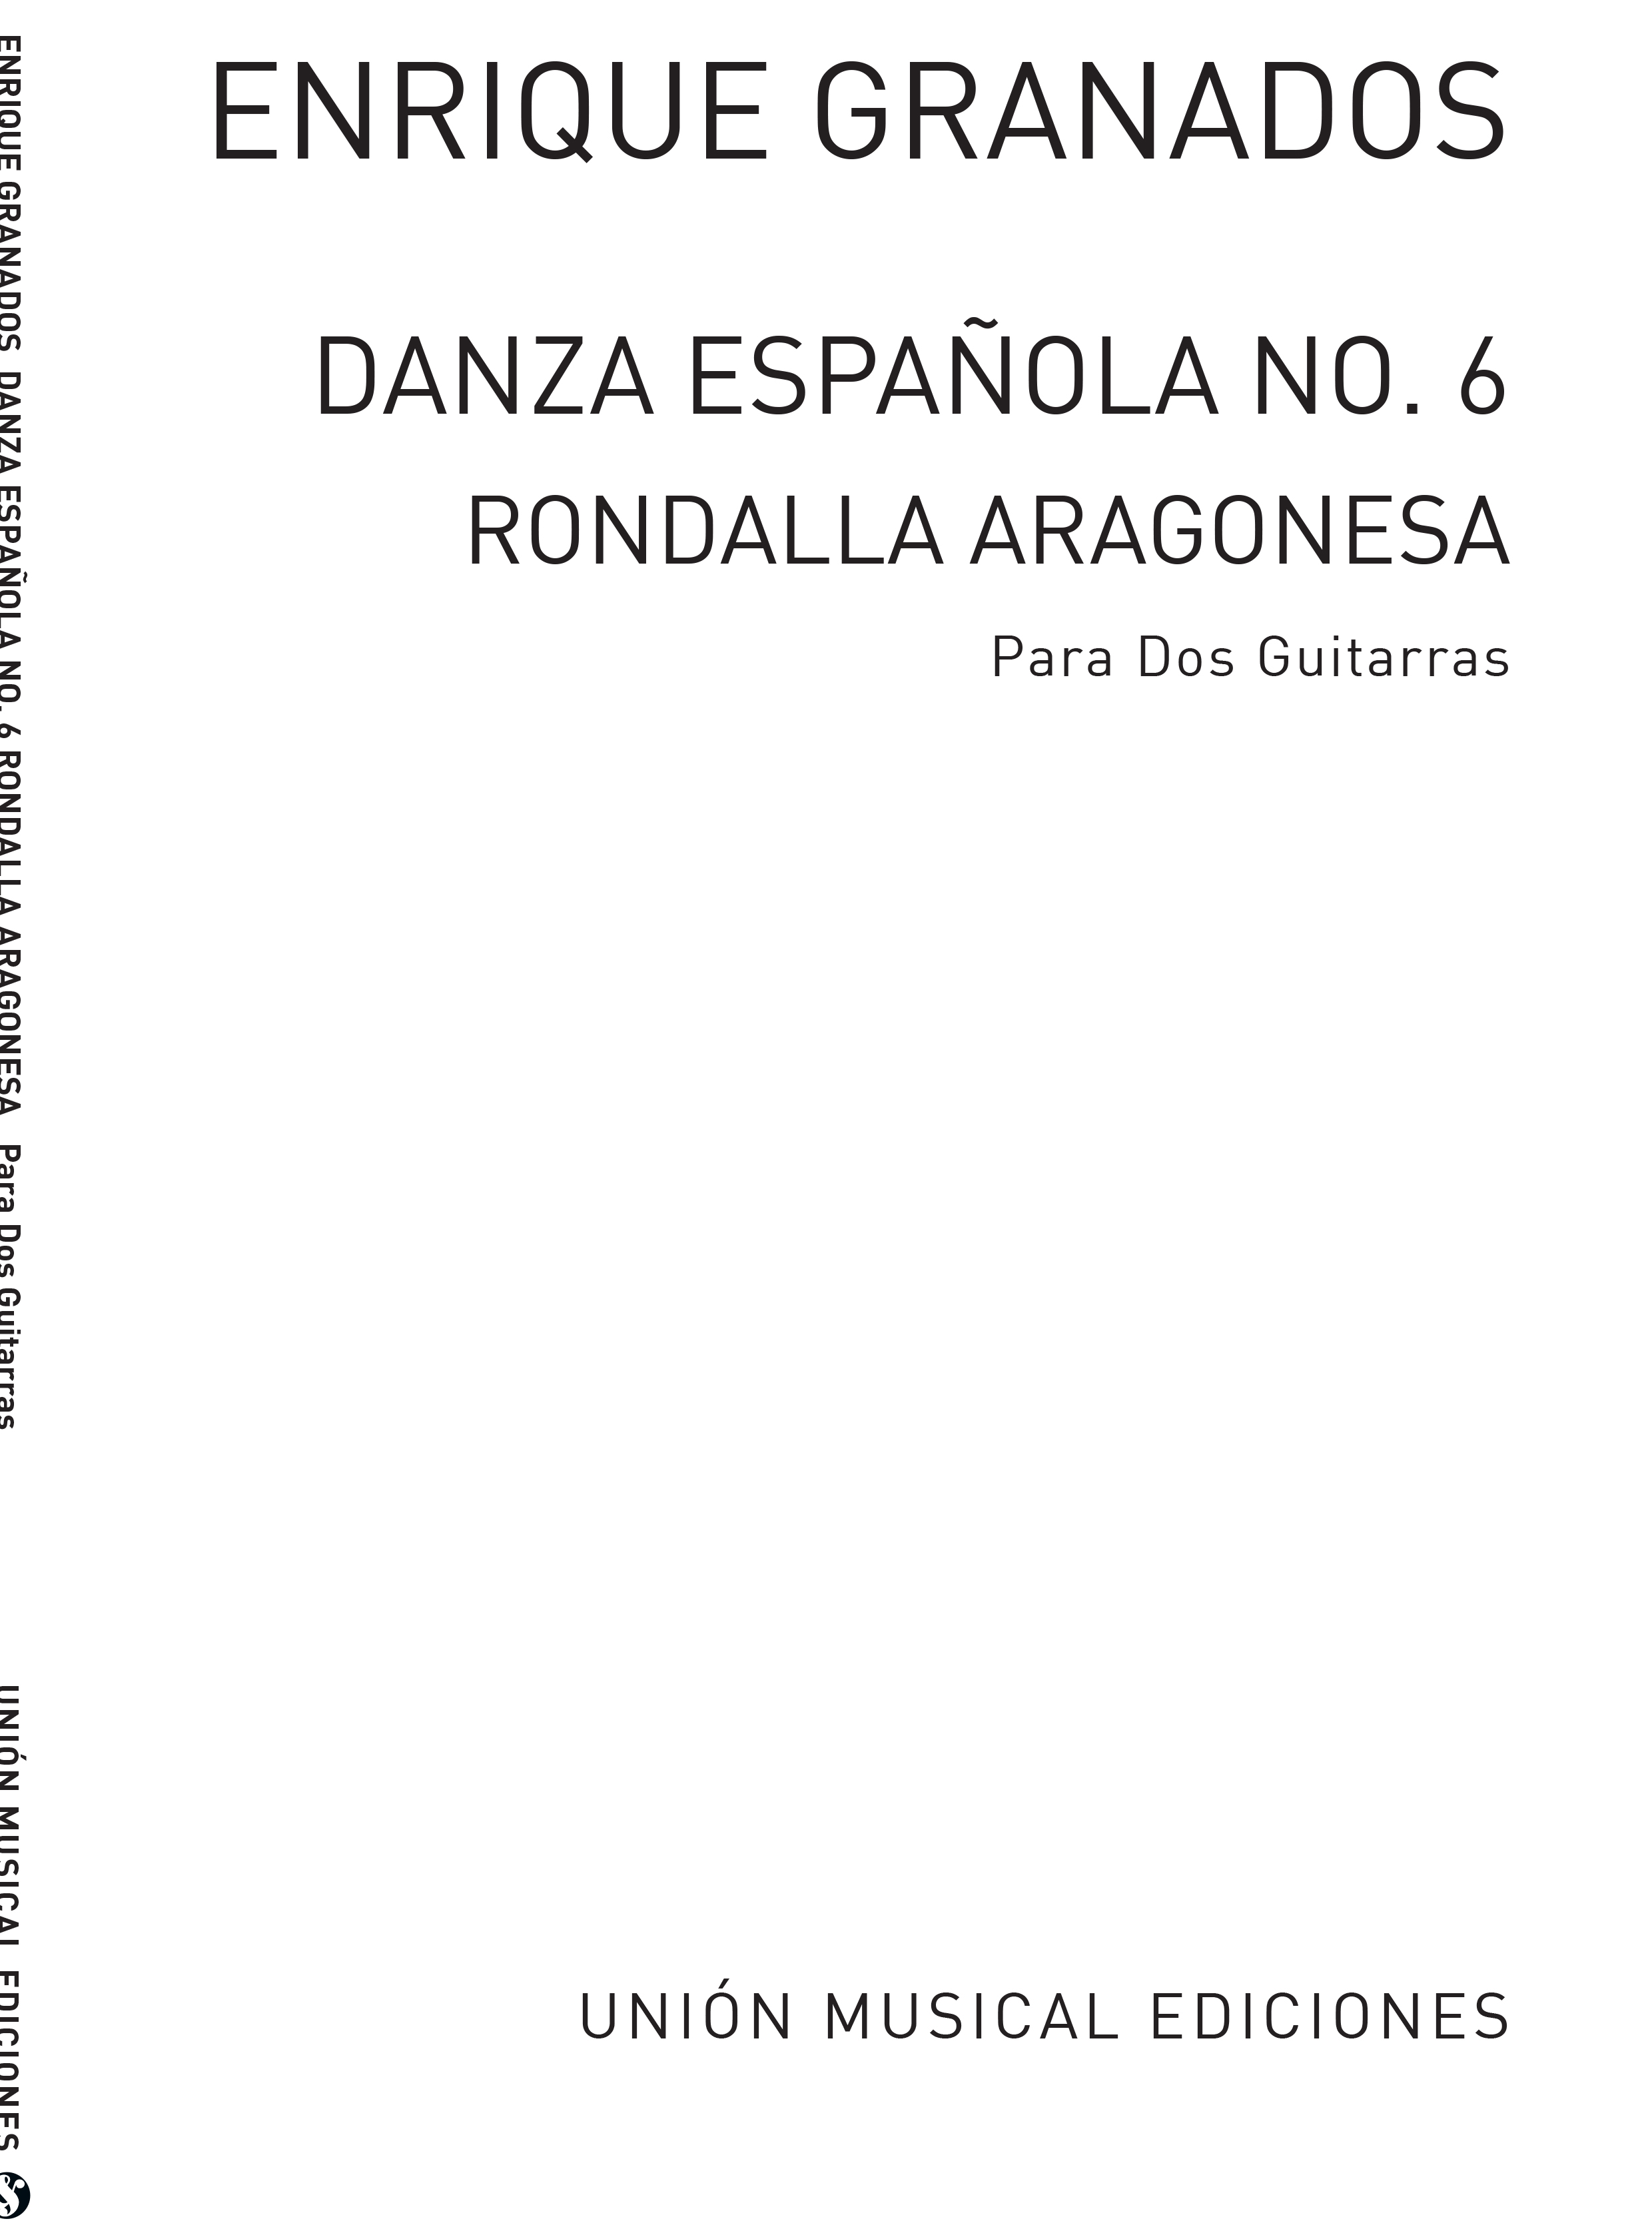 Enrique Granados: Danza Espanola No.6 Rondalla Aragonesa: Guitar